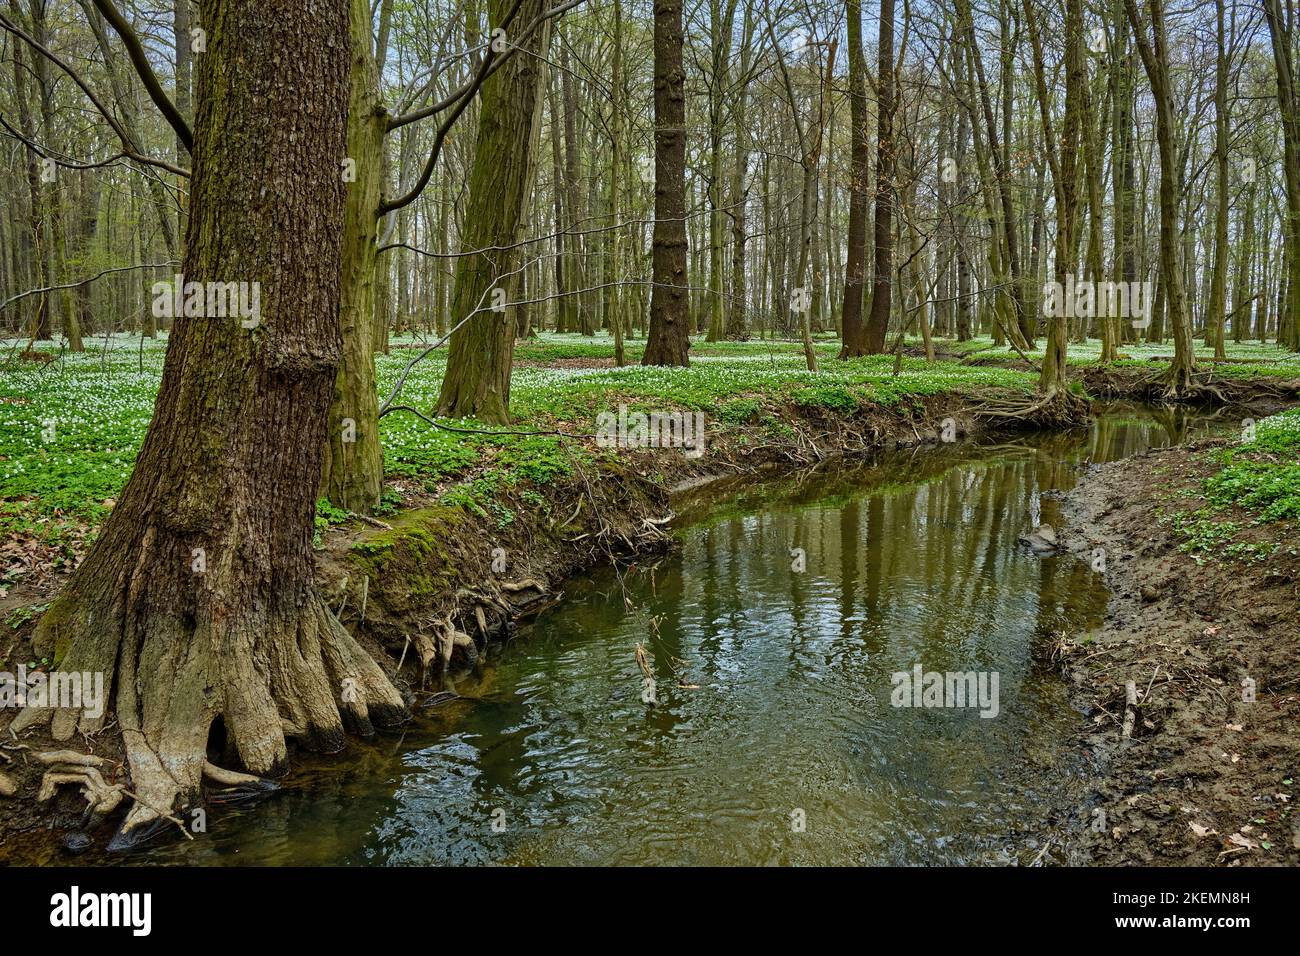 Das Naturschutzgebiet Lasker Auenwald im sorbischen Siedlungsgebiet im Frühling, ein naturbelassener Auwald des Klosterwassers und beliebtes Naherholu Foto de stock